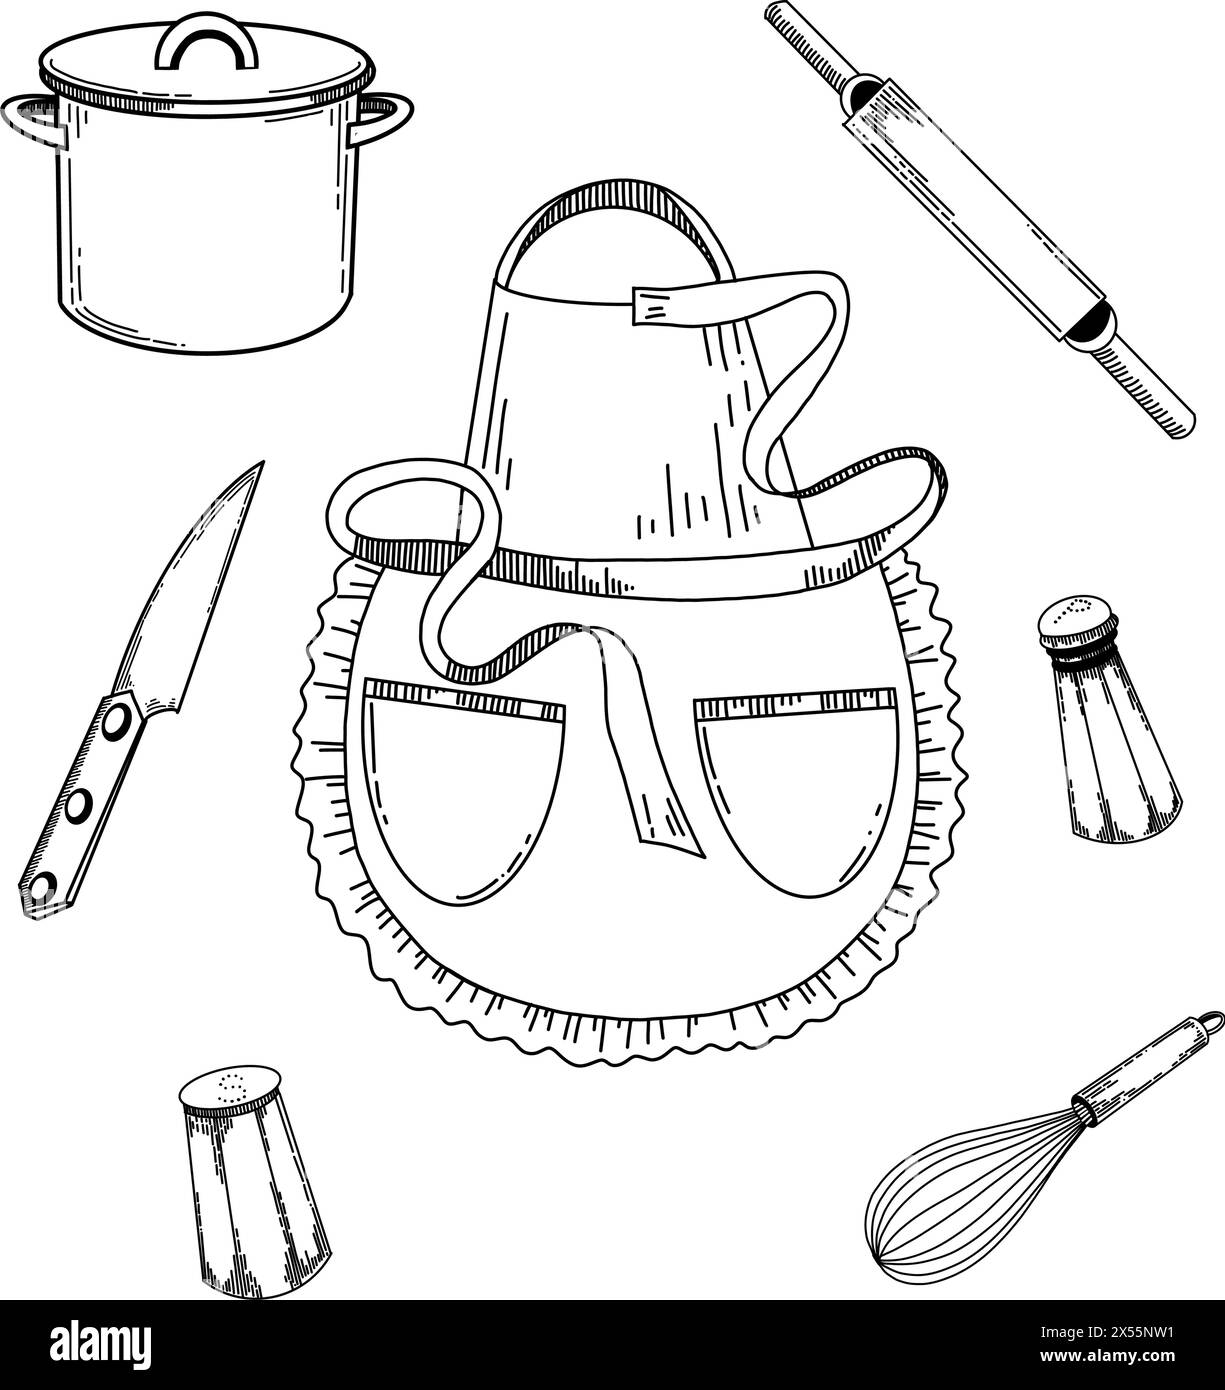 Illustration für die Küche. Kochschürze, Messer, Nudelnadel für Teig, Salz- und Pfefferstreuer, Schneebesen zum Schlafen. Objekte werden schwarz gezeichnet Stock Vektor